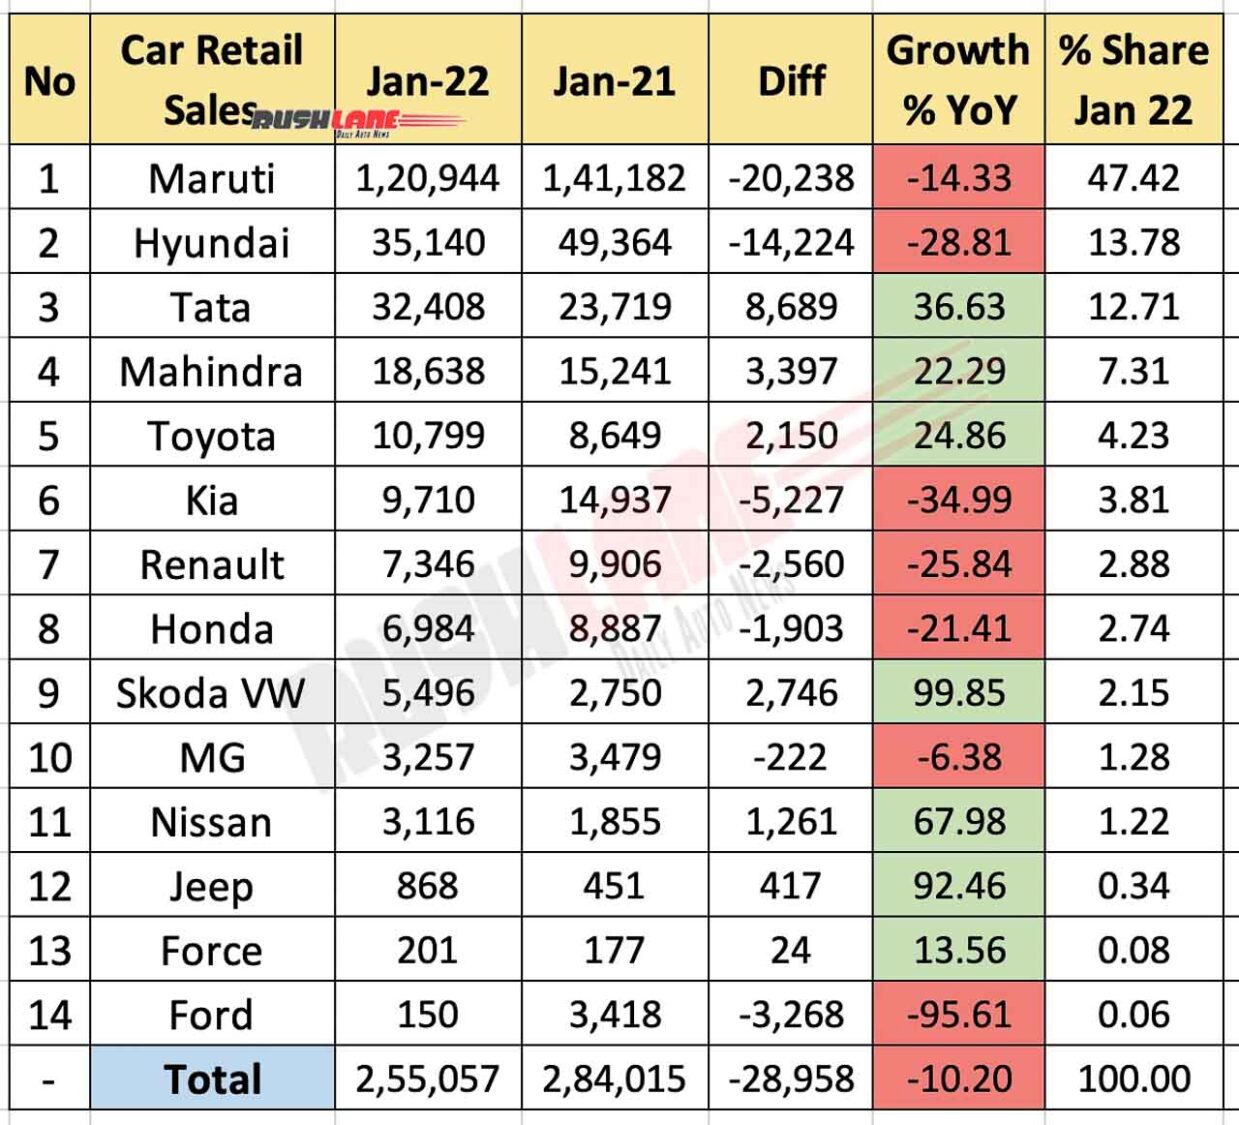 Car Retail Sales Jan 2022 vs Jan 2021 (YoY)